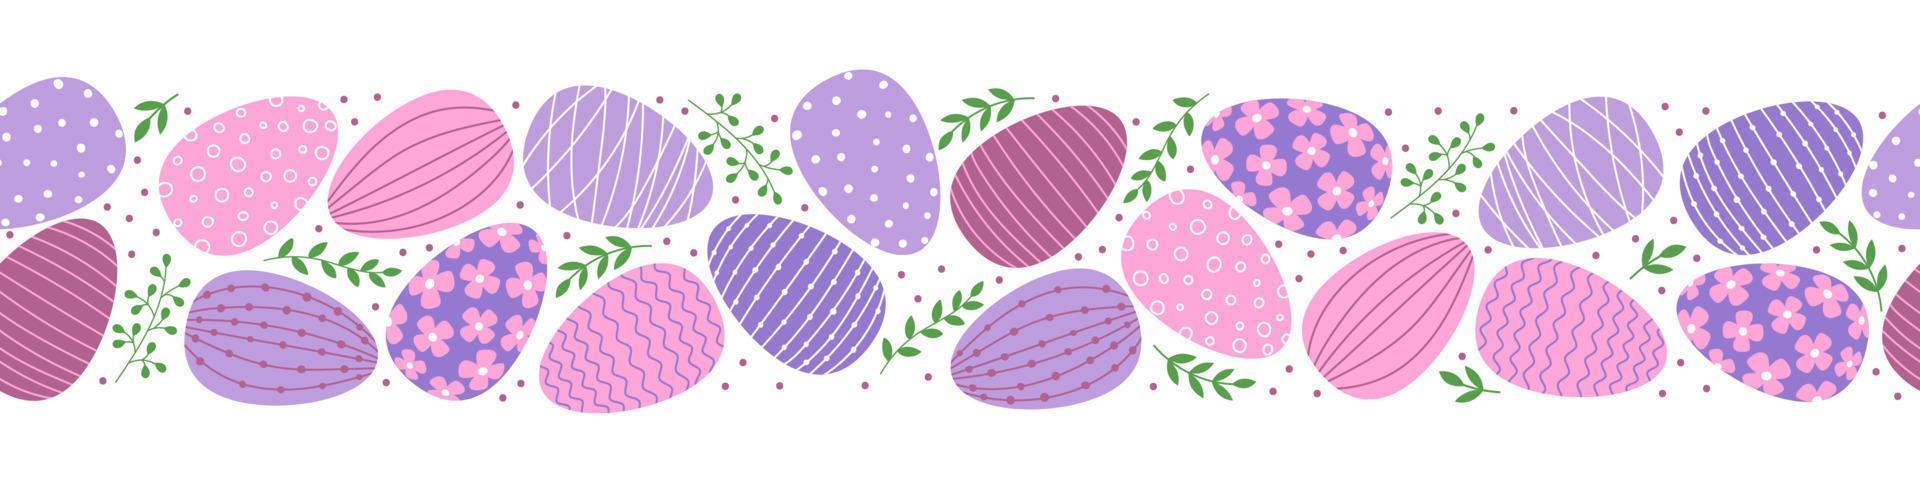 fronteira sem costura com ovos de páscoa decorados e folhas. ovos de estilo simples nas cores rosa e roxas. vetor